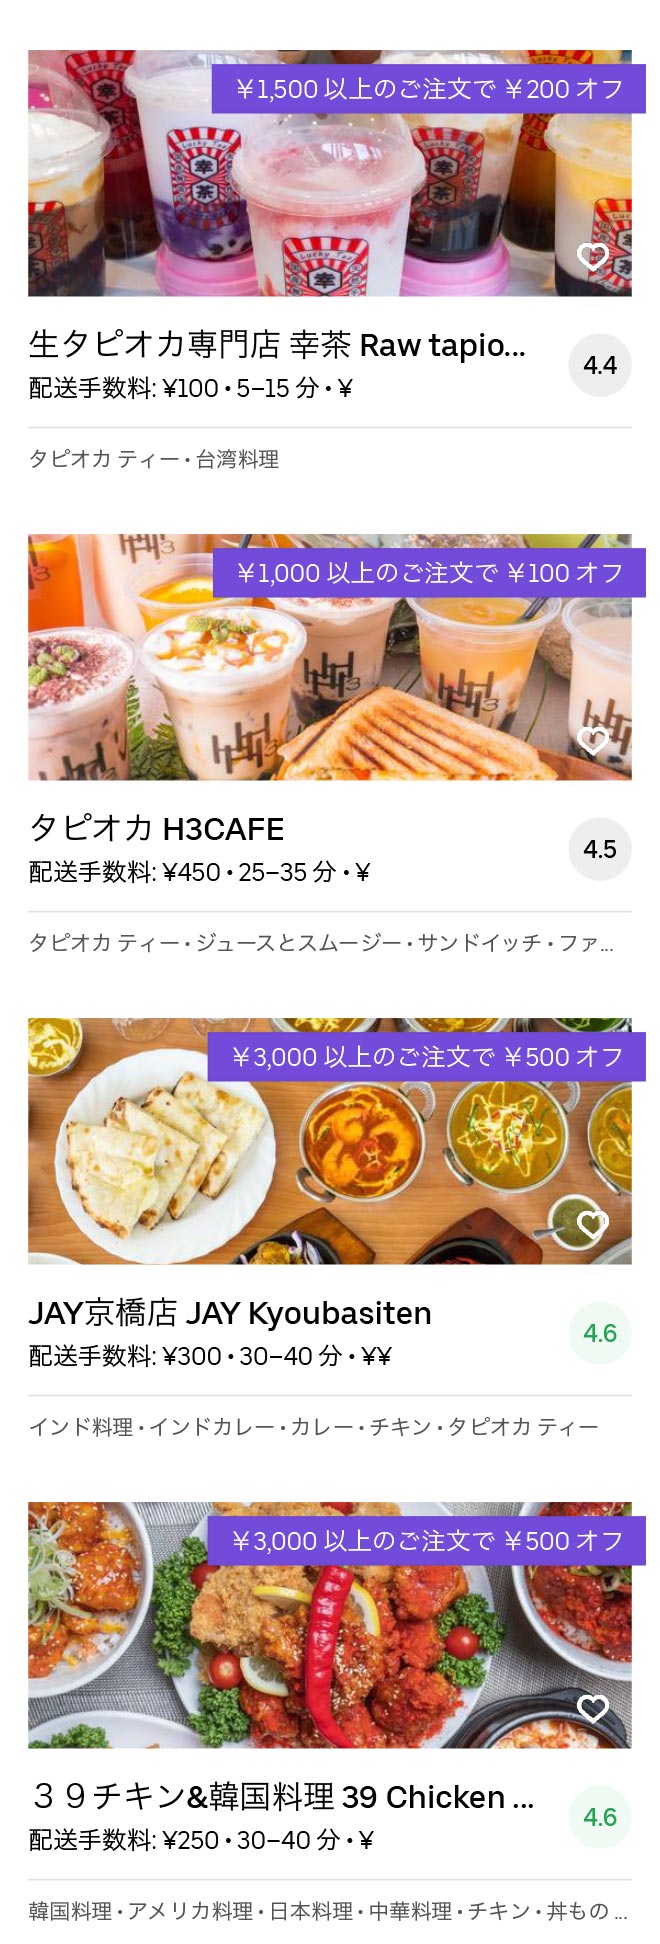 Higashi osaka fuse menu 2005 06